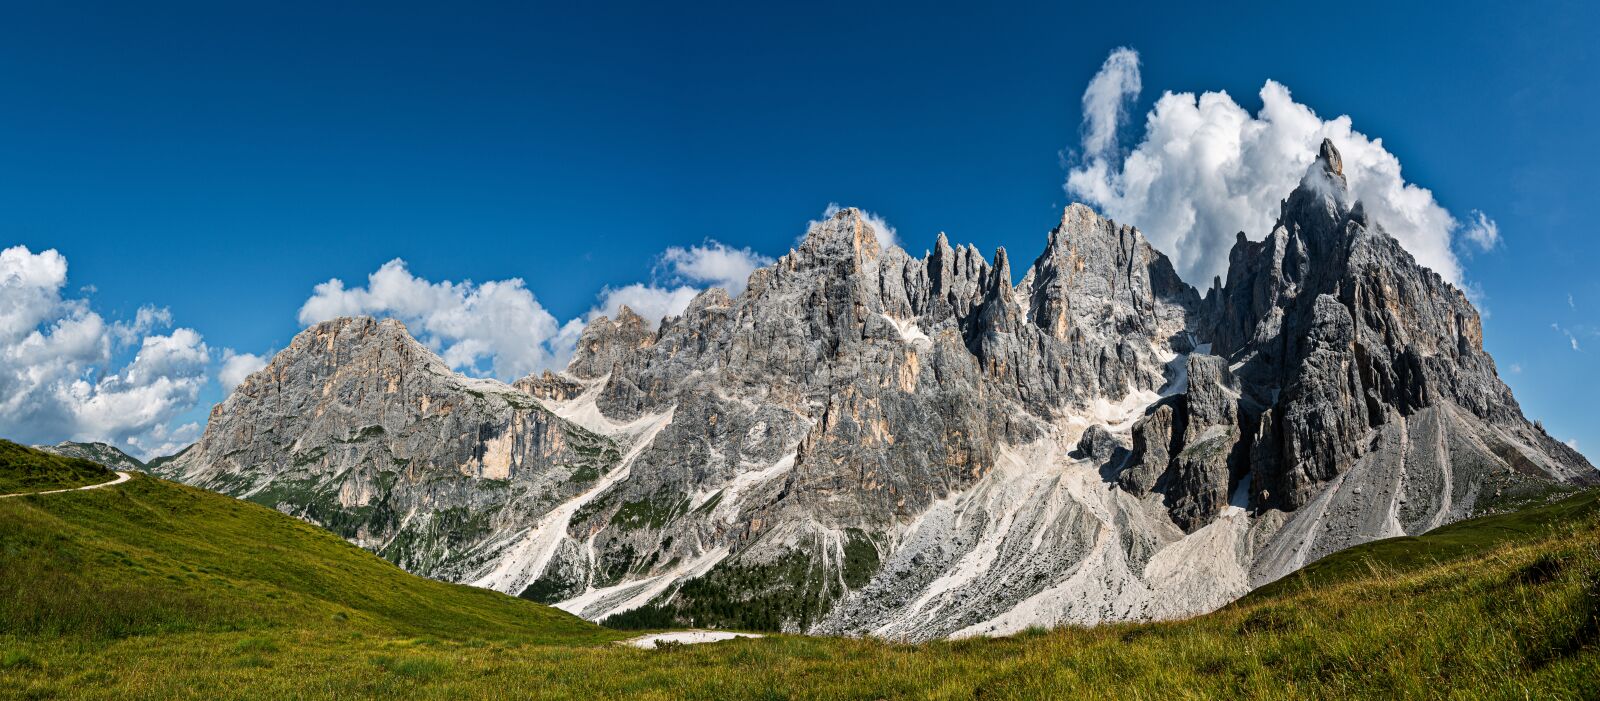 Sony a7R III + Sony Vario-Tessar T* FE 16-35mm F4 ZA OSS sample photo. "Dolomites, mountain, nature" photography